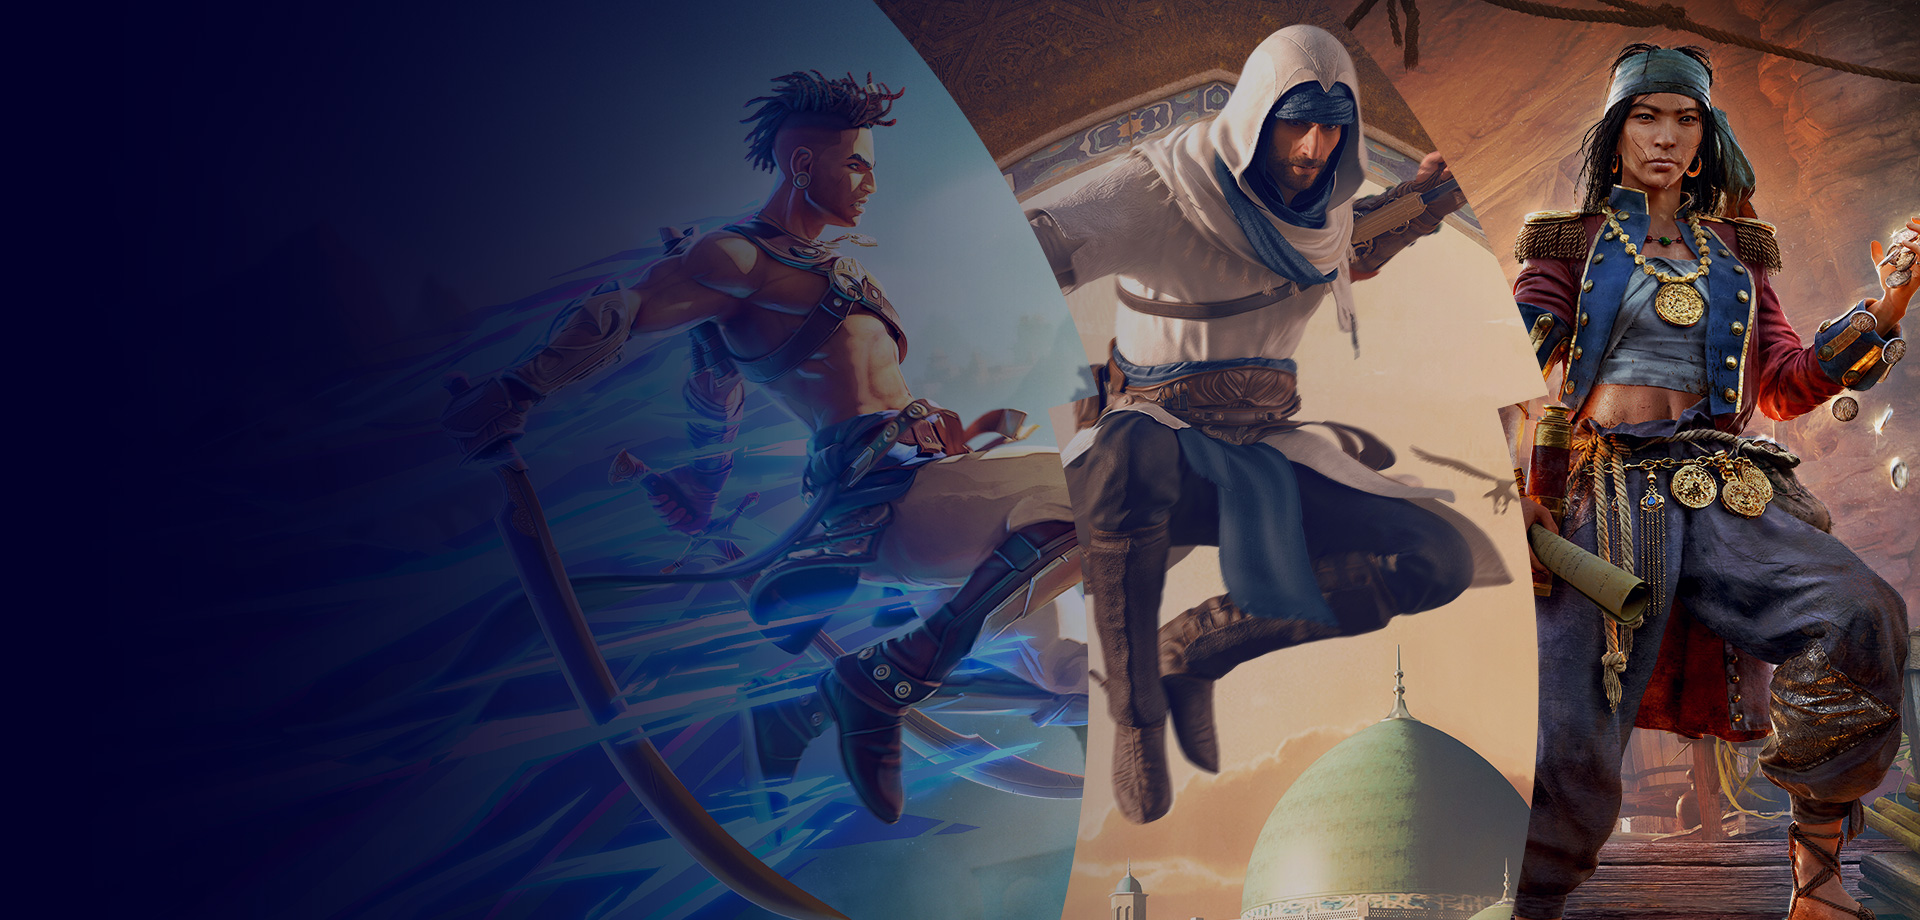 Un tríptico con imágenes de los personajes de Prince of Persia, Assassin's Creed y Skull and Bones.